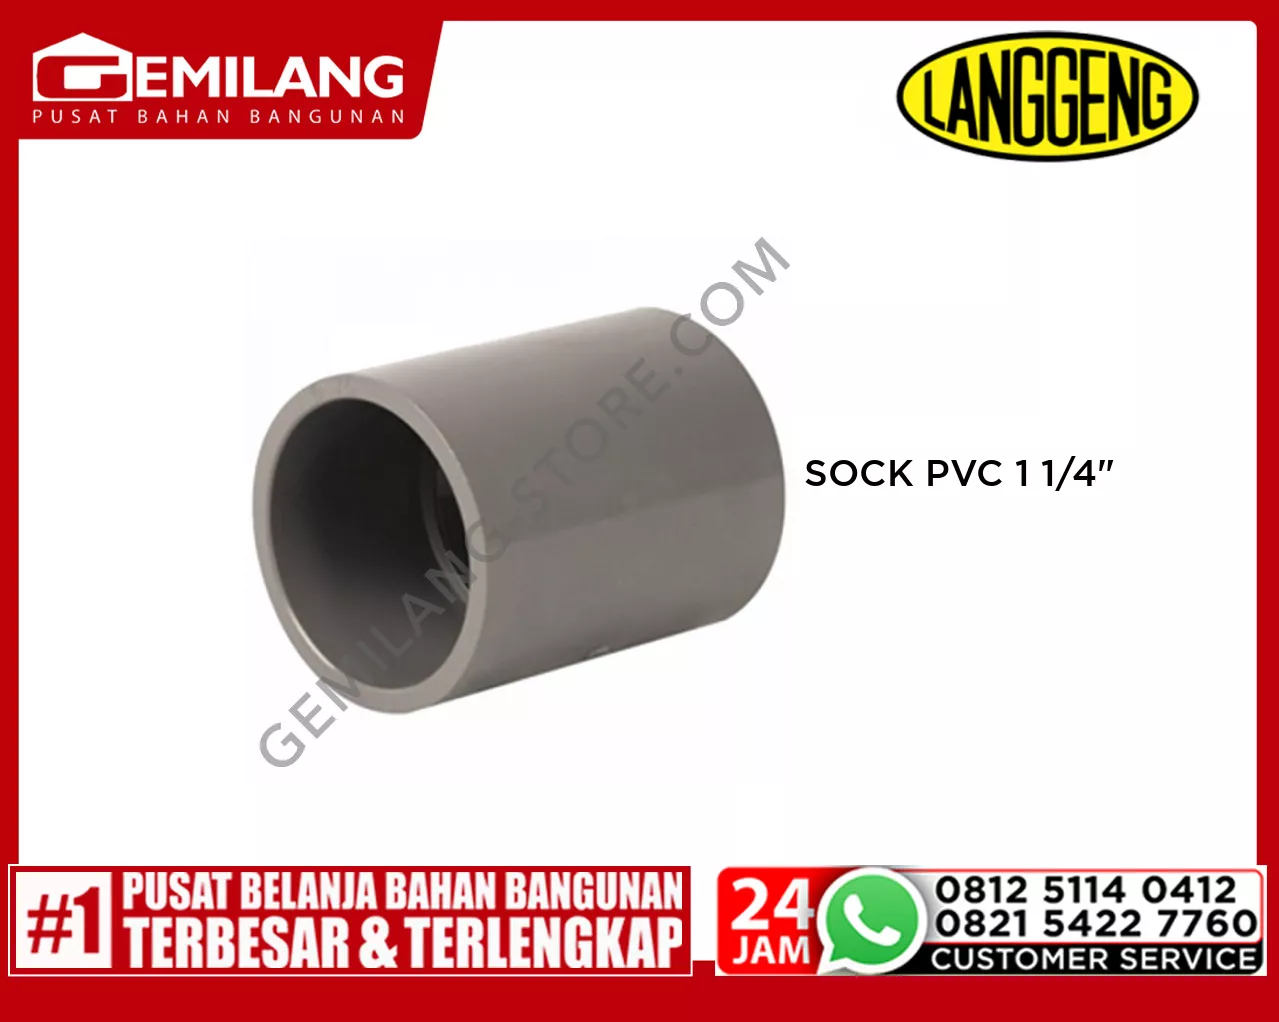 LANGGENG SOCK PVC 1 1/4inch